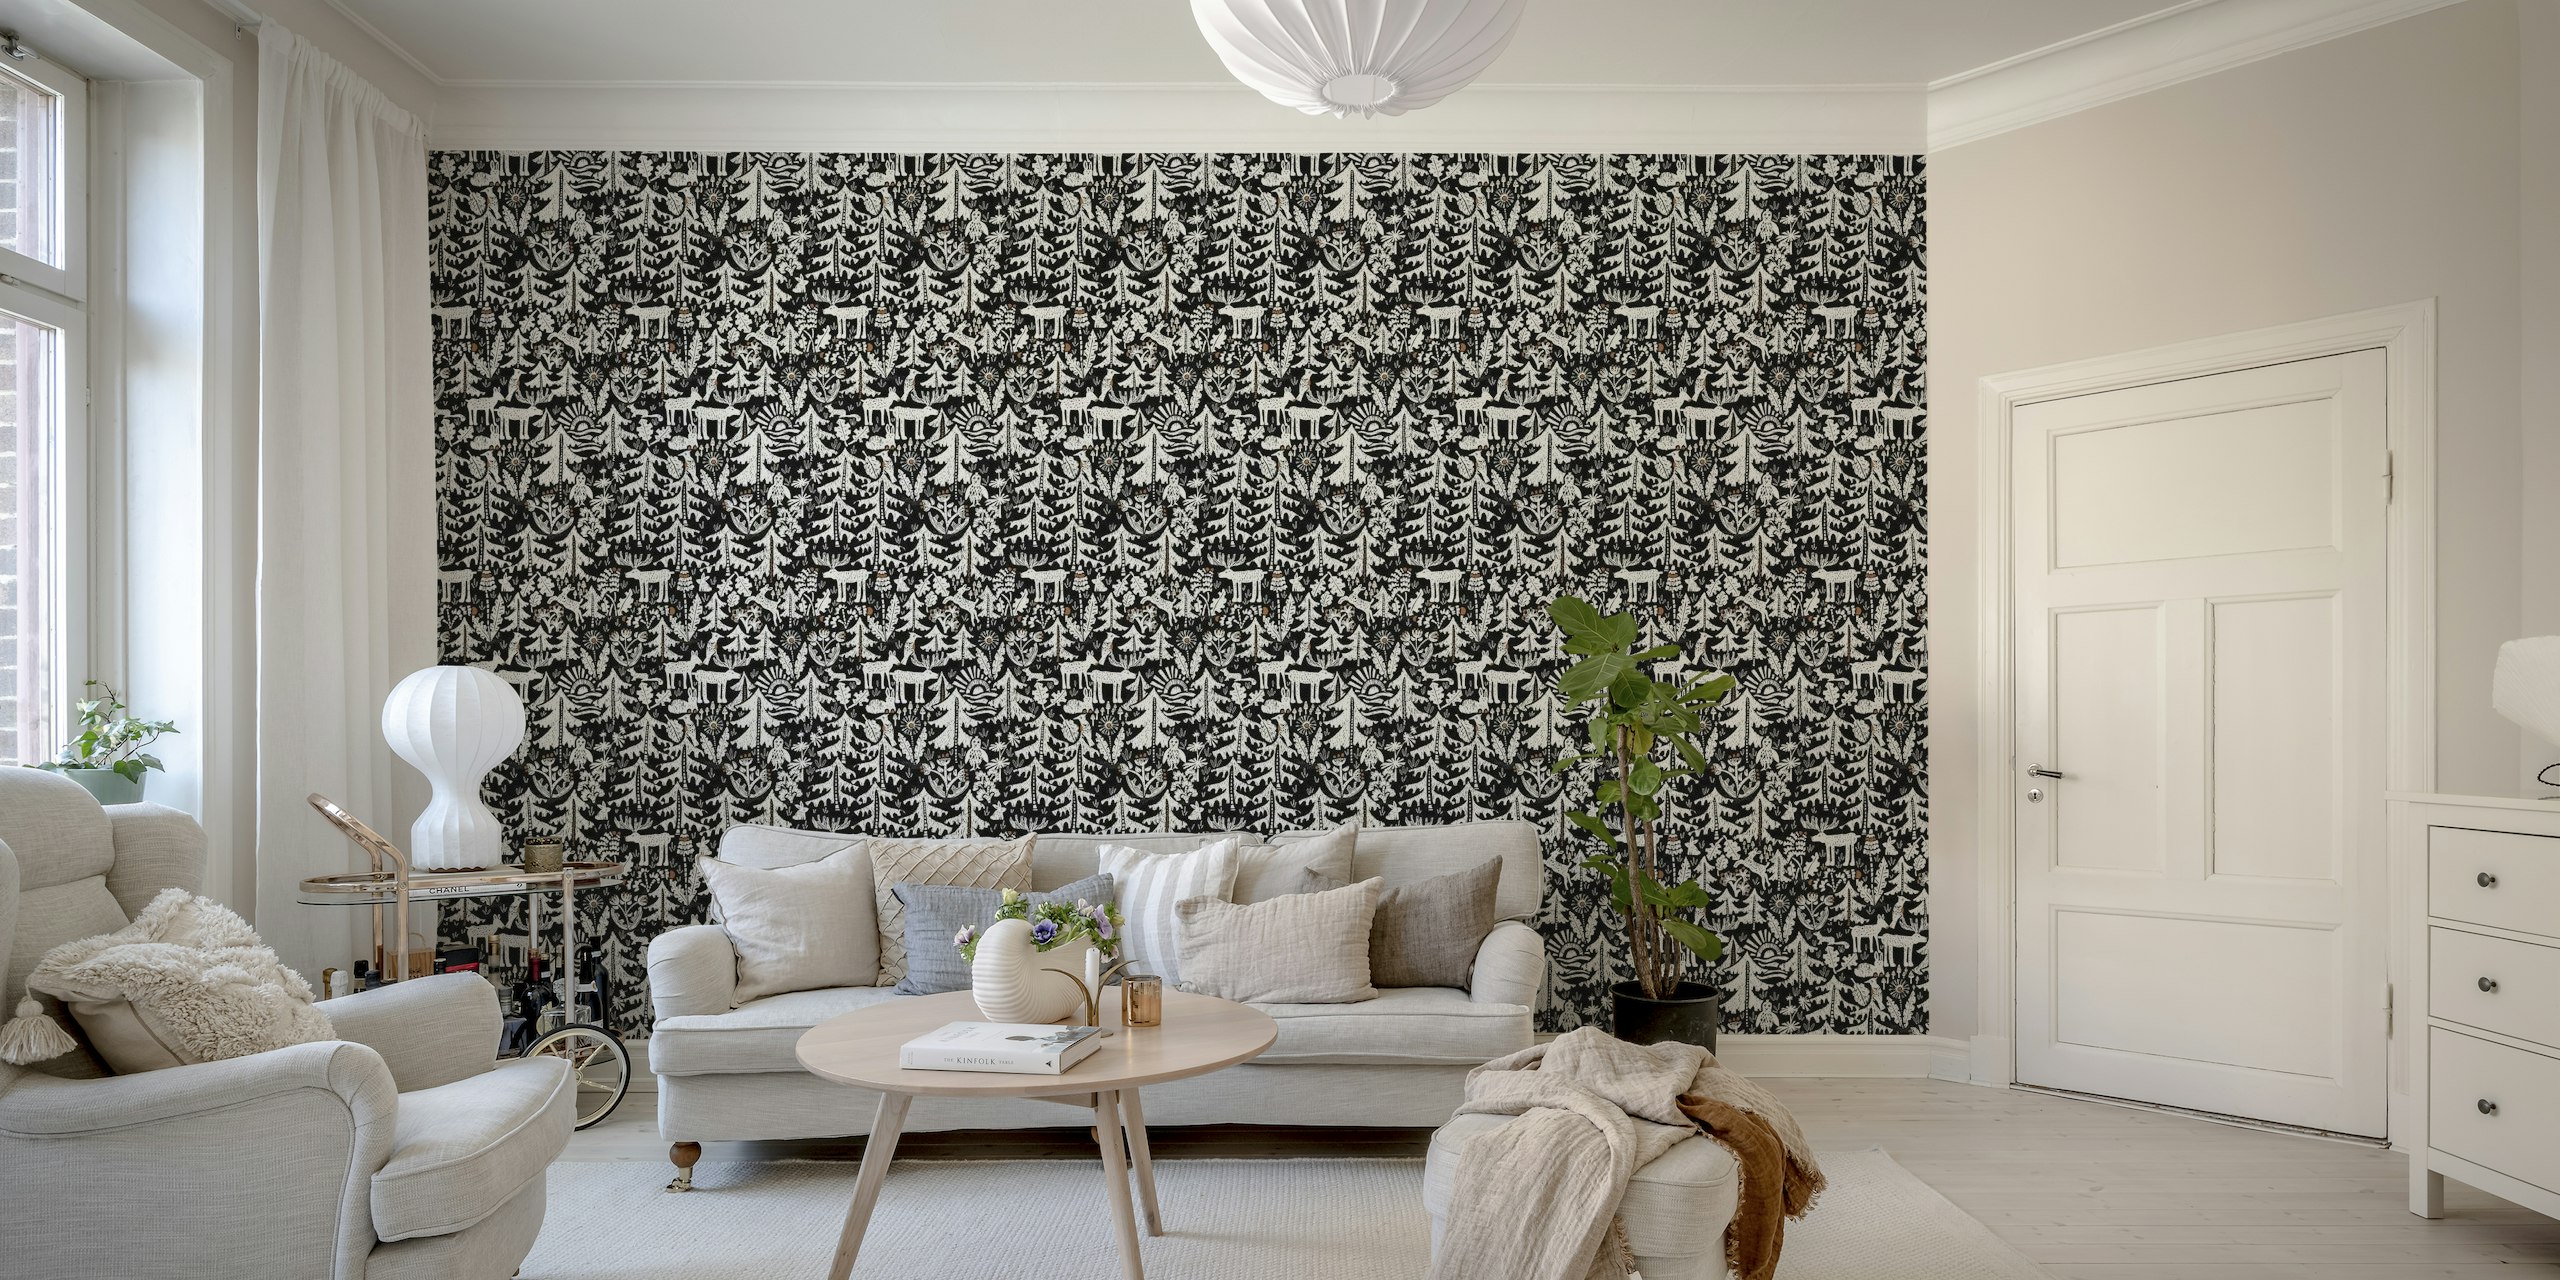 Mural de pared en blanco y negro de la Selva Negra con árboles estilizados y vida silvestre